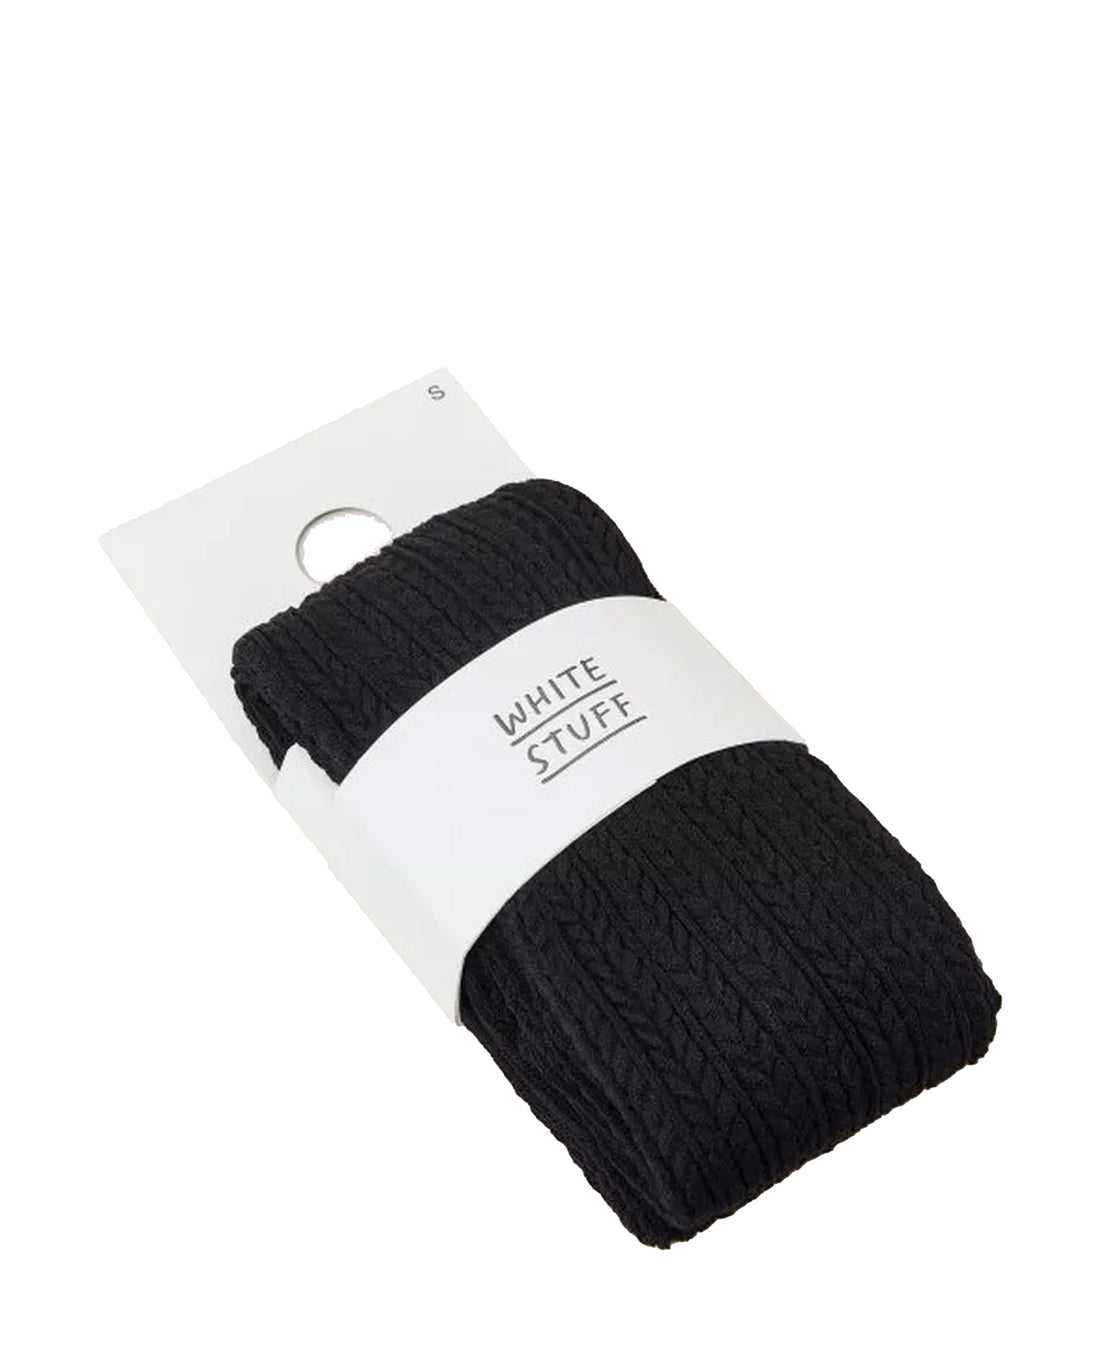 Cara Cable Knit Tights - Dark Navy